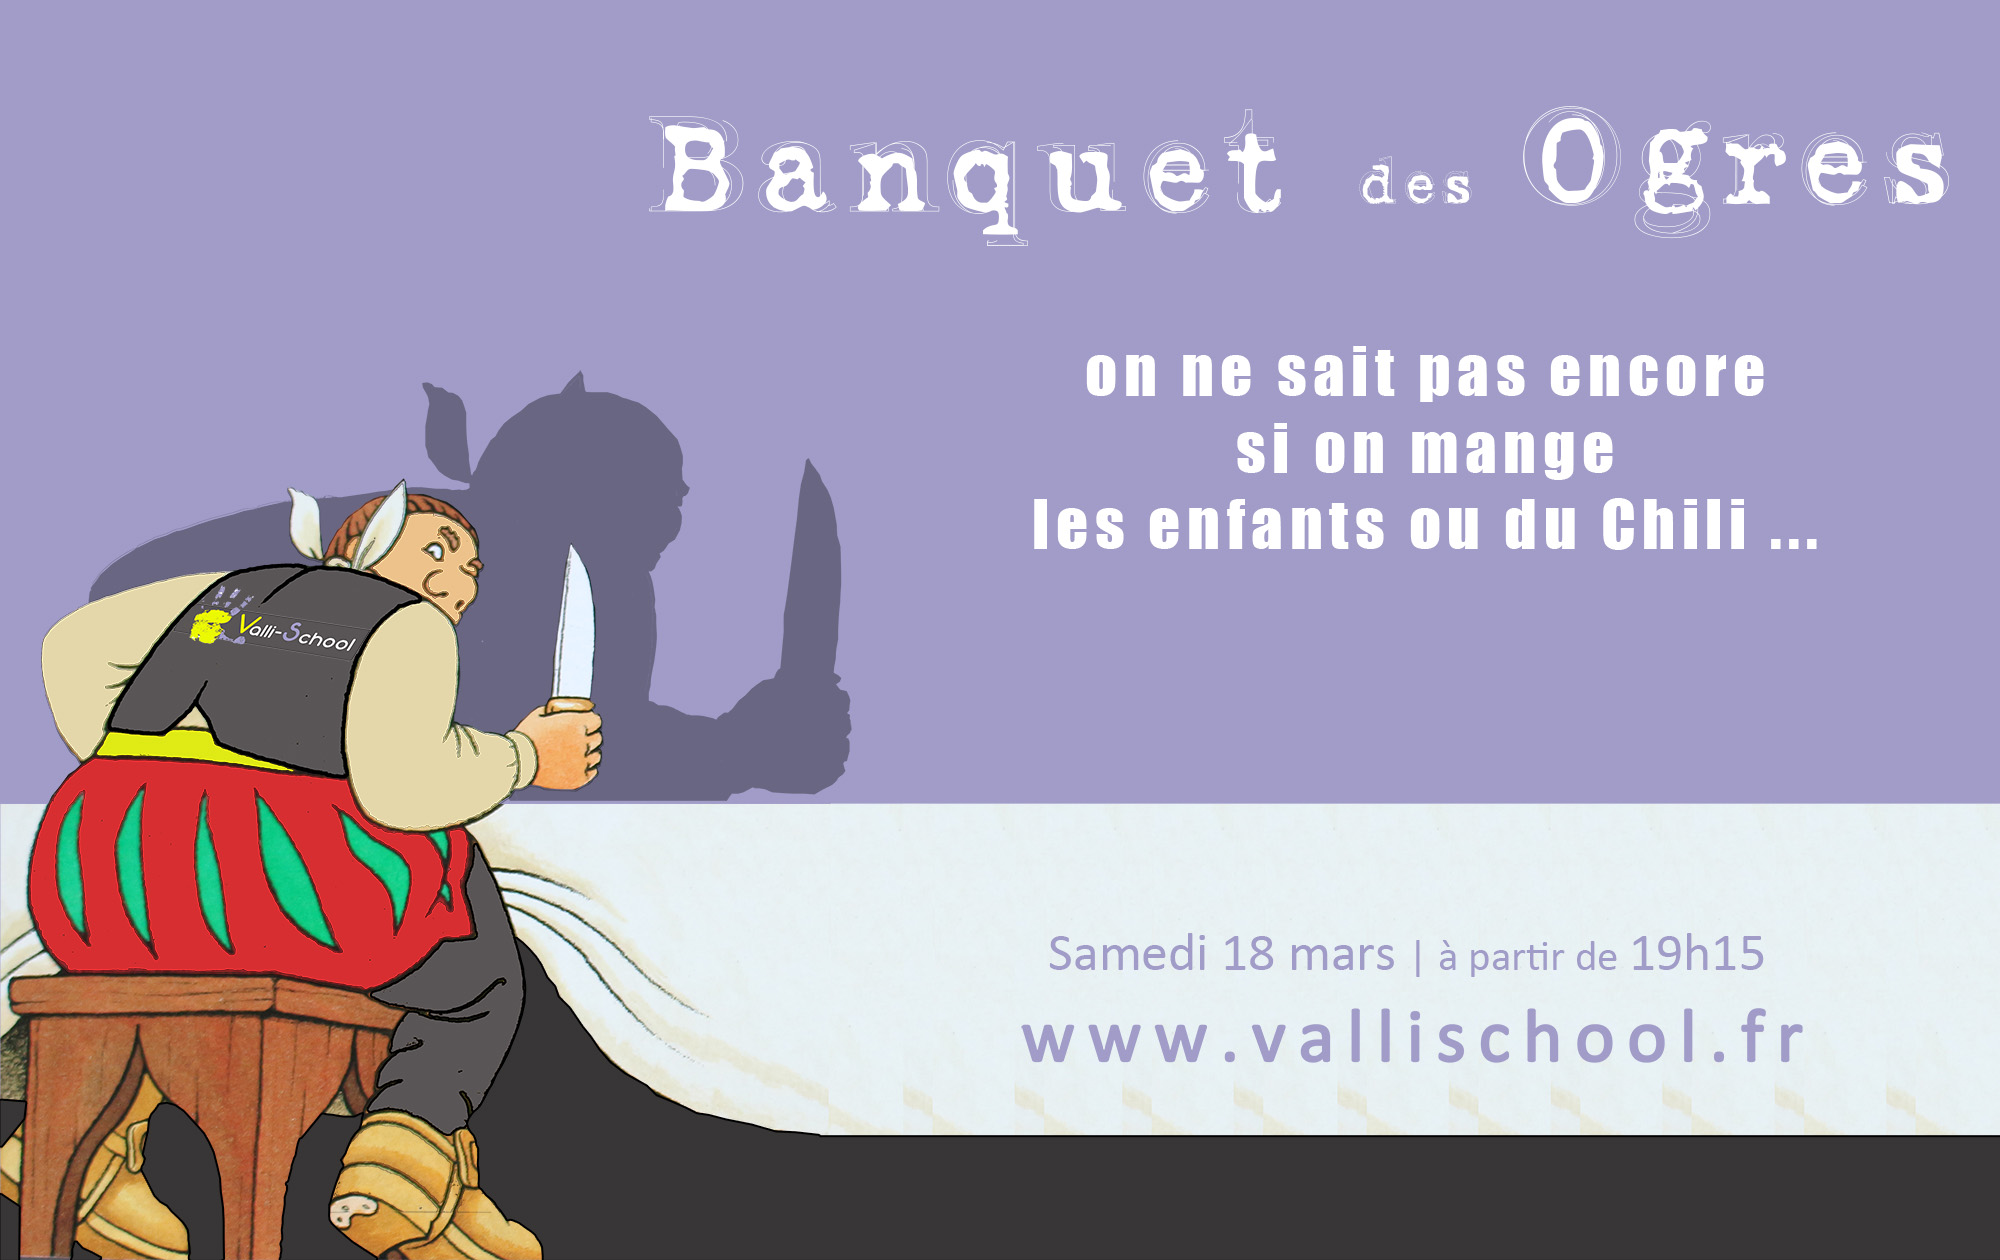 Visuel Web - Banquet des ogres.jpg